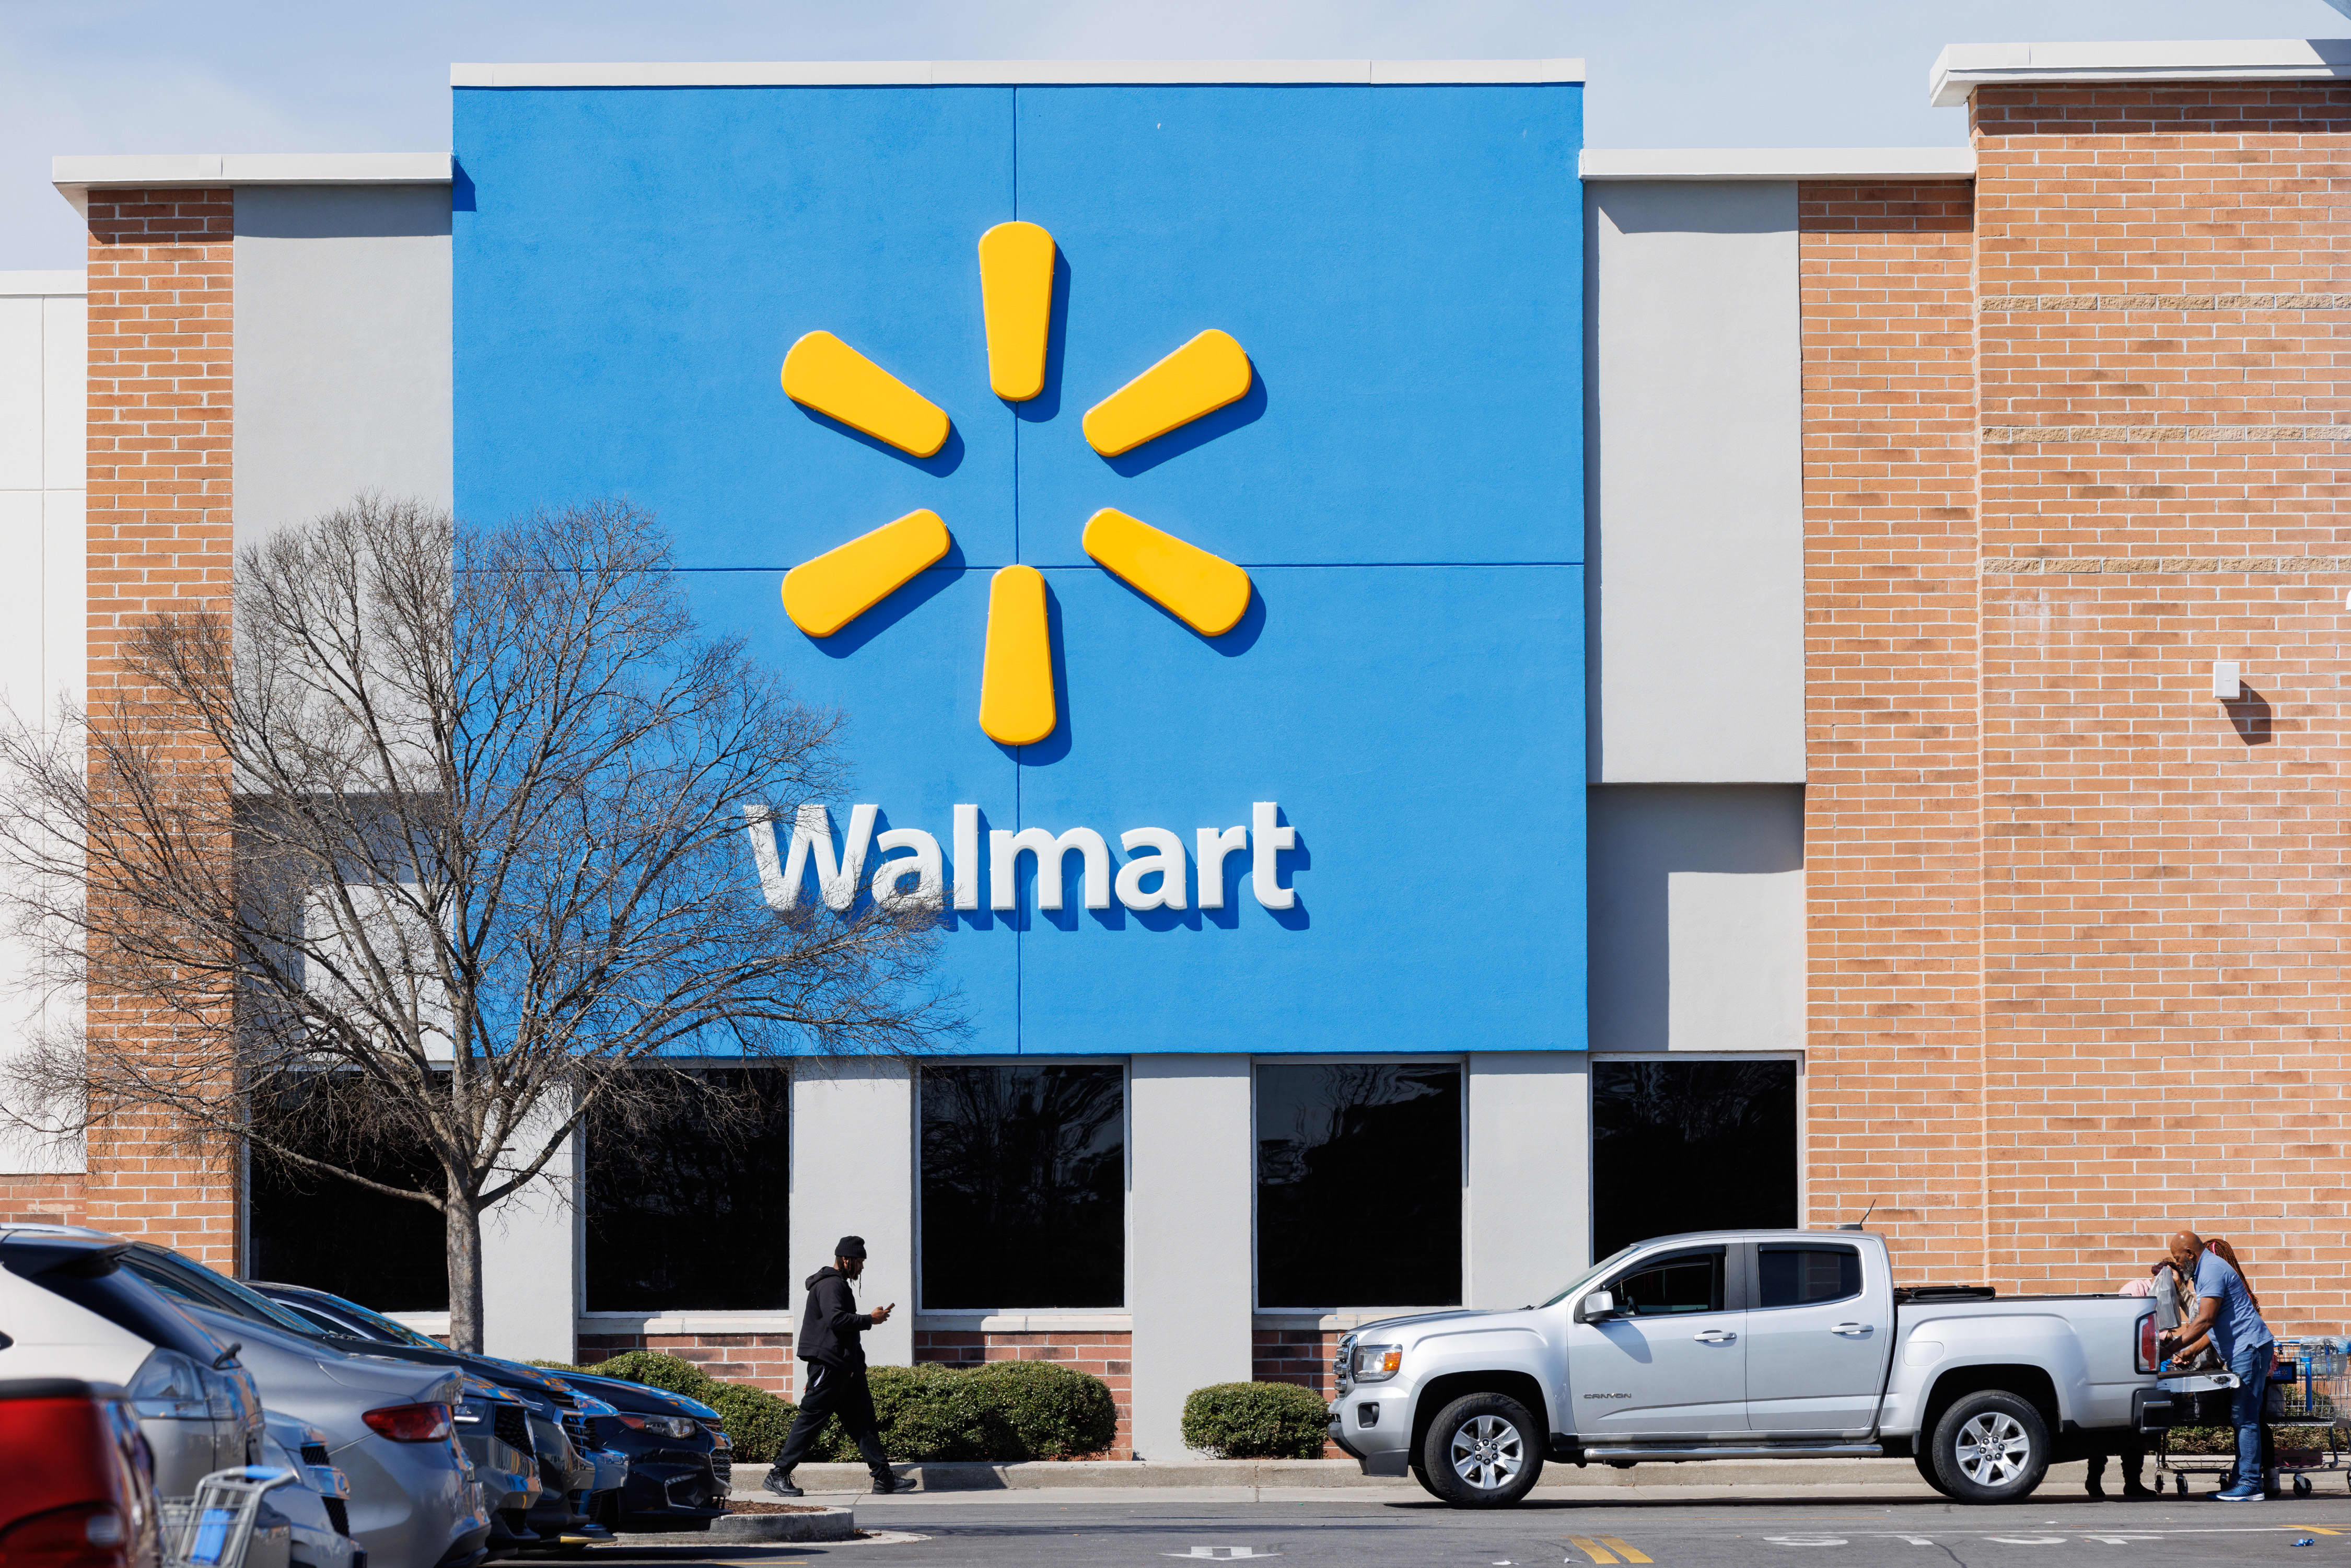 Walmart flexes as retail gets choppy